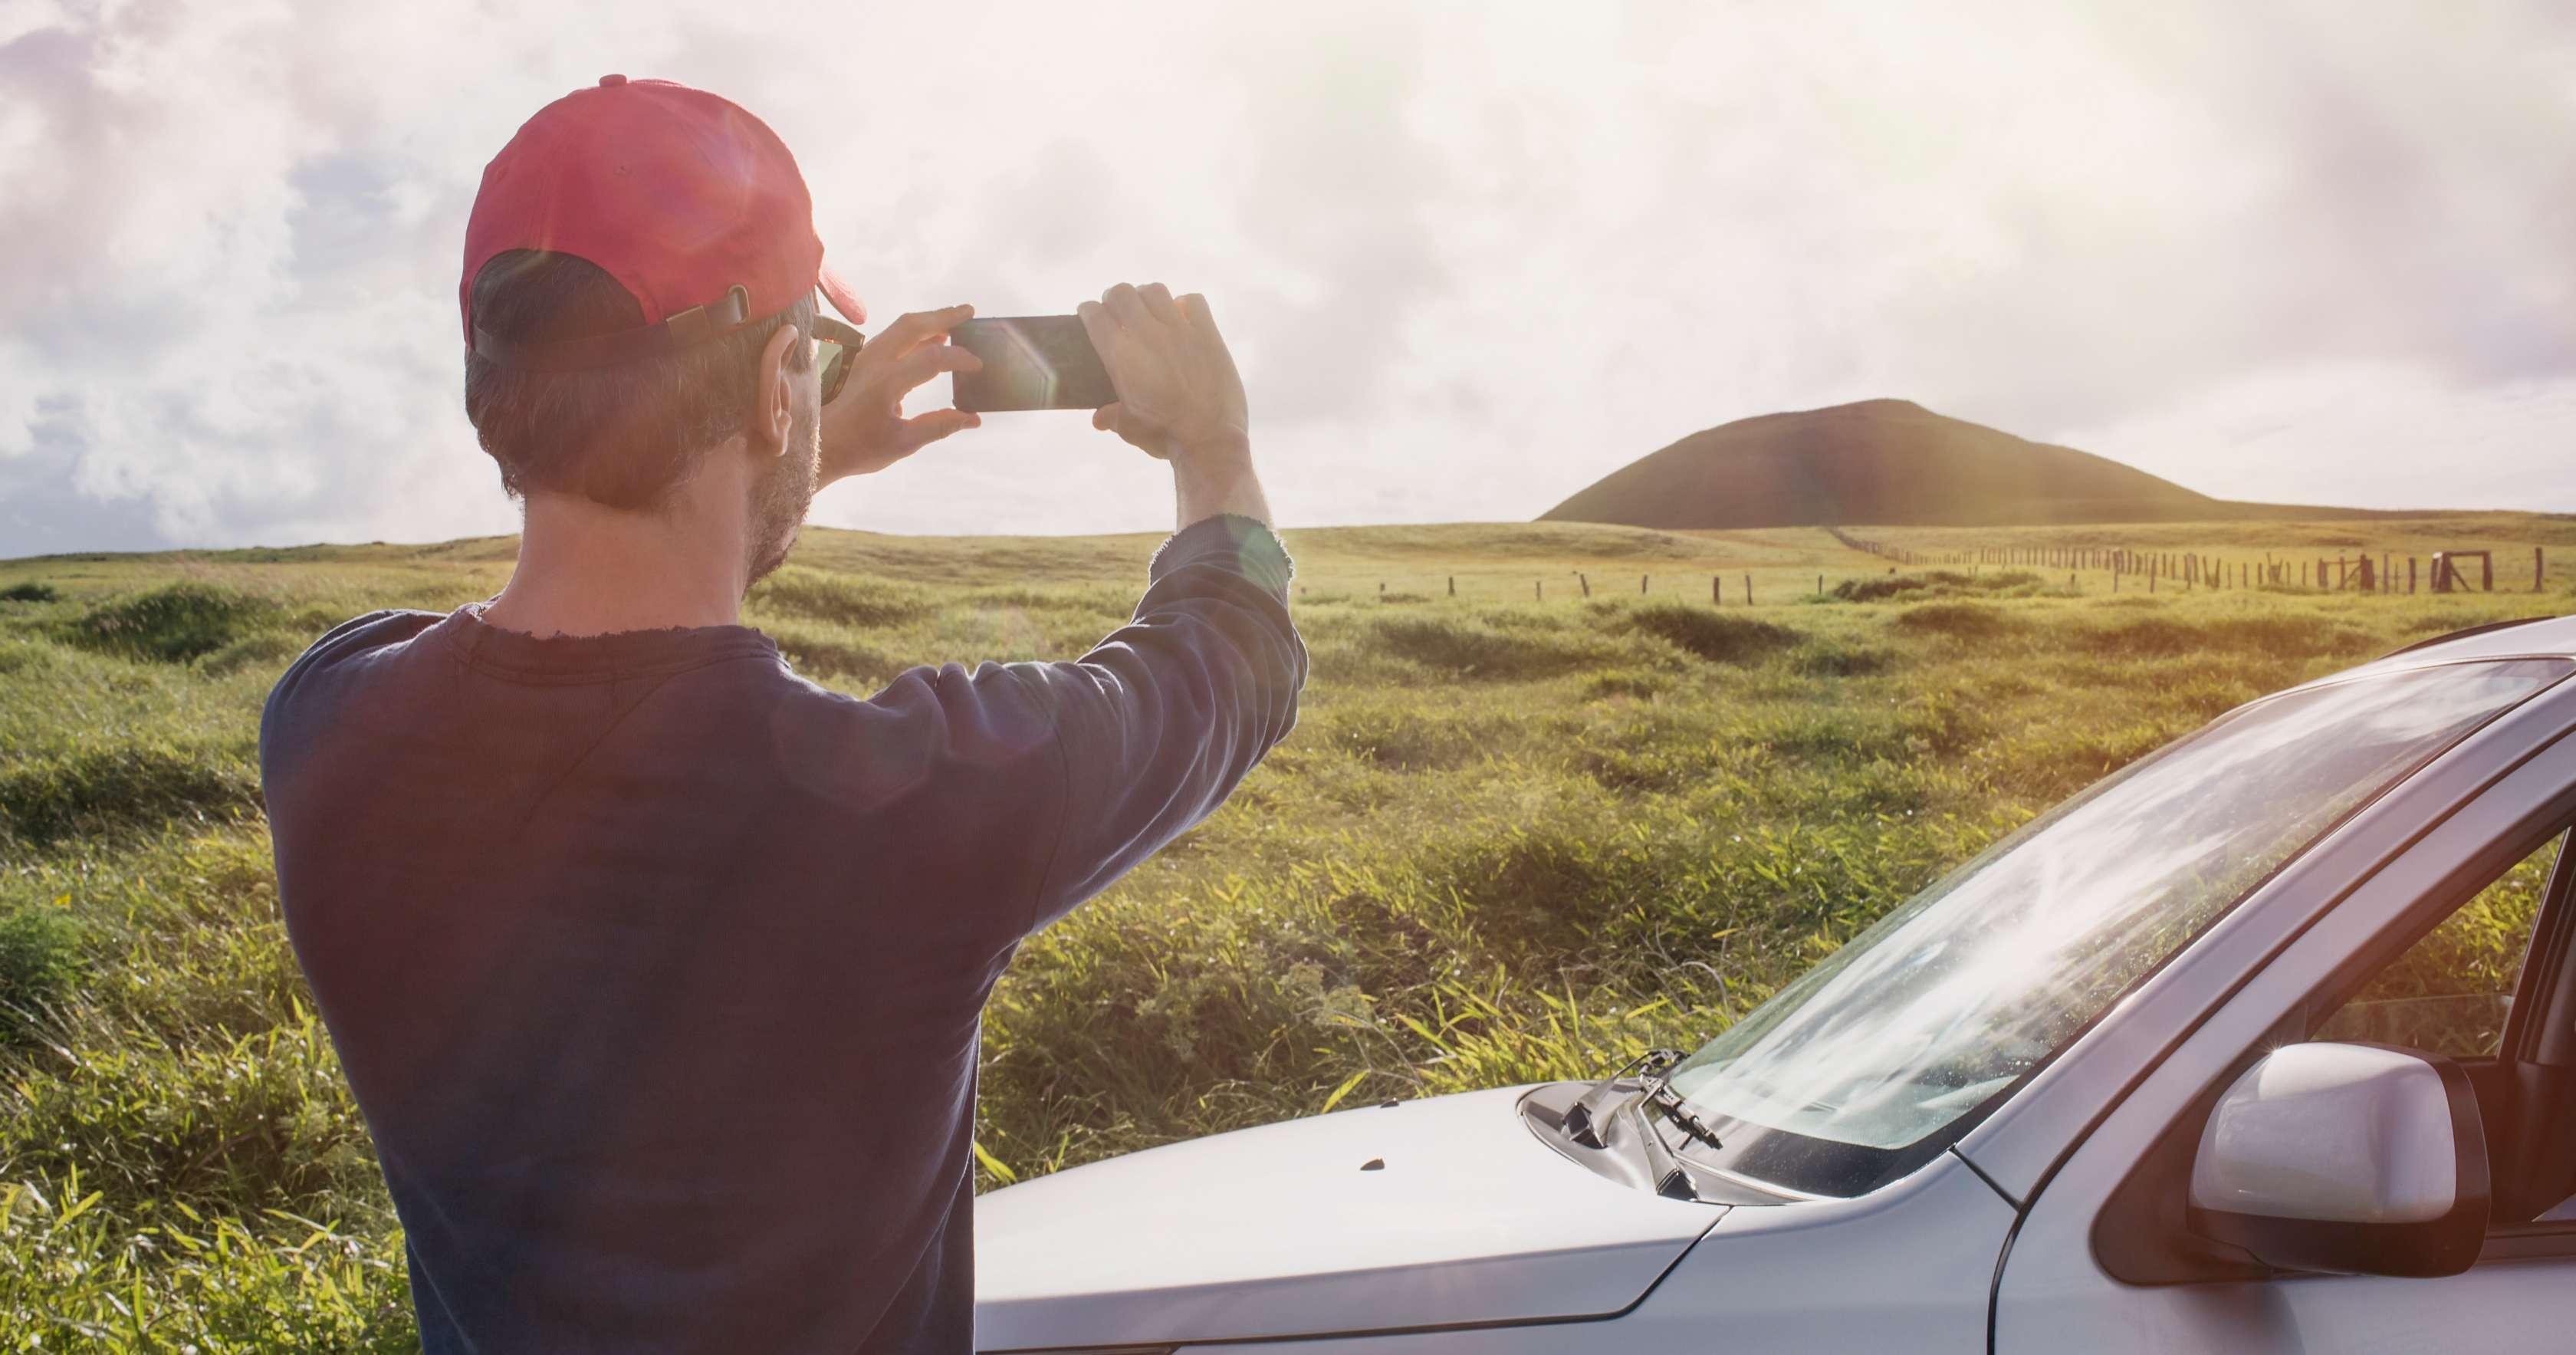 Mann mit Basecap steht neben seinem Auto und fotografiert eine Landschaft